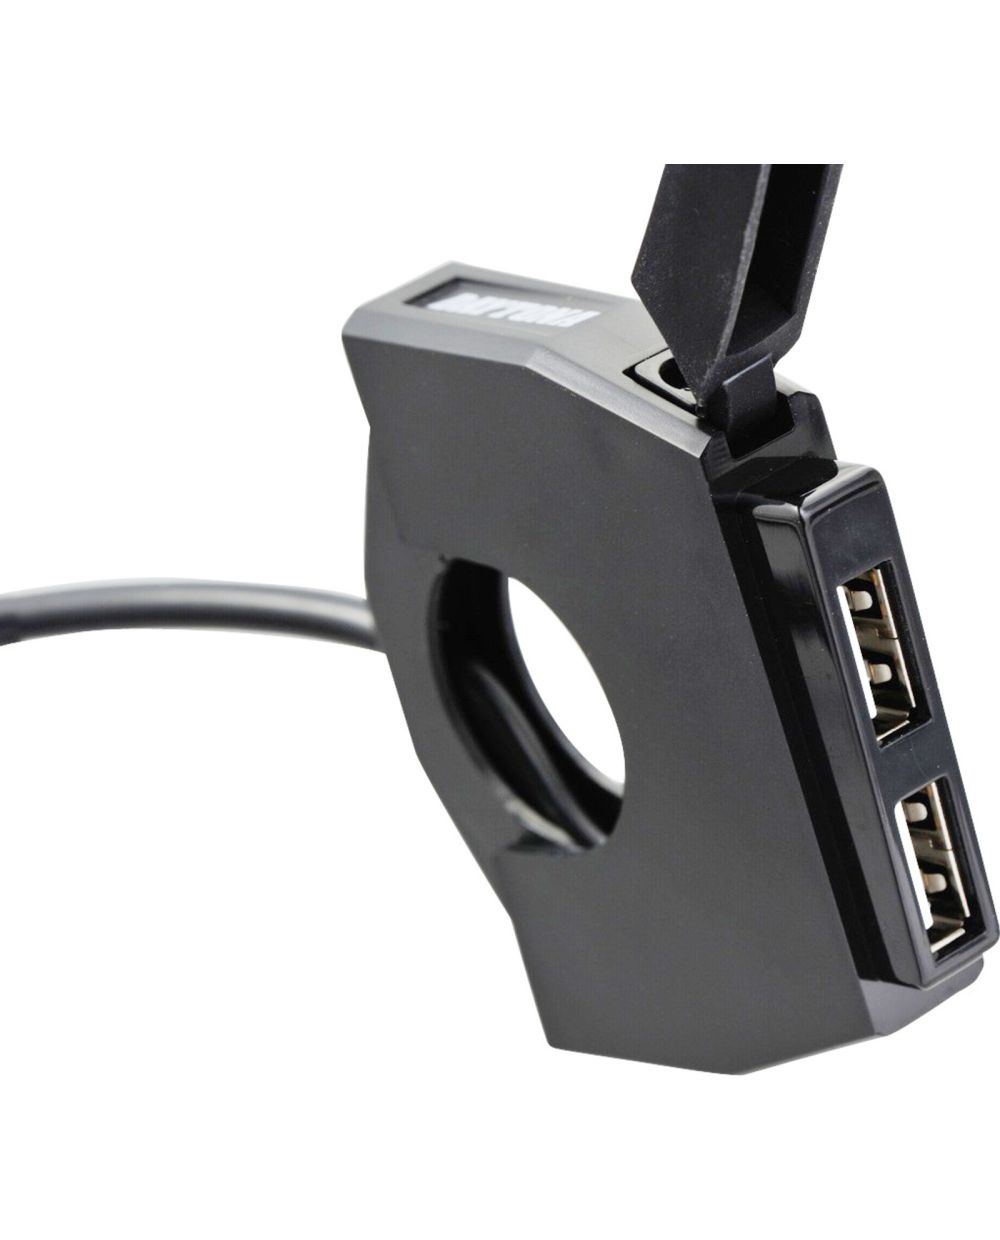 USB-Steckdose im Lenkerschalter-Look mit USB-Port (2.4A max.), nur 13.5mm  breit, für 22mm & 1' Lenker passend, Anschluss an geschaltetes Plus  (Zündschloss)